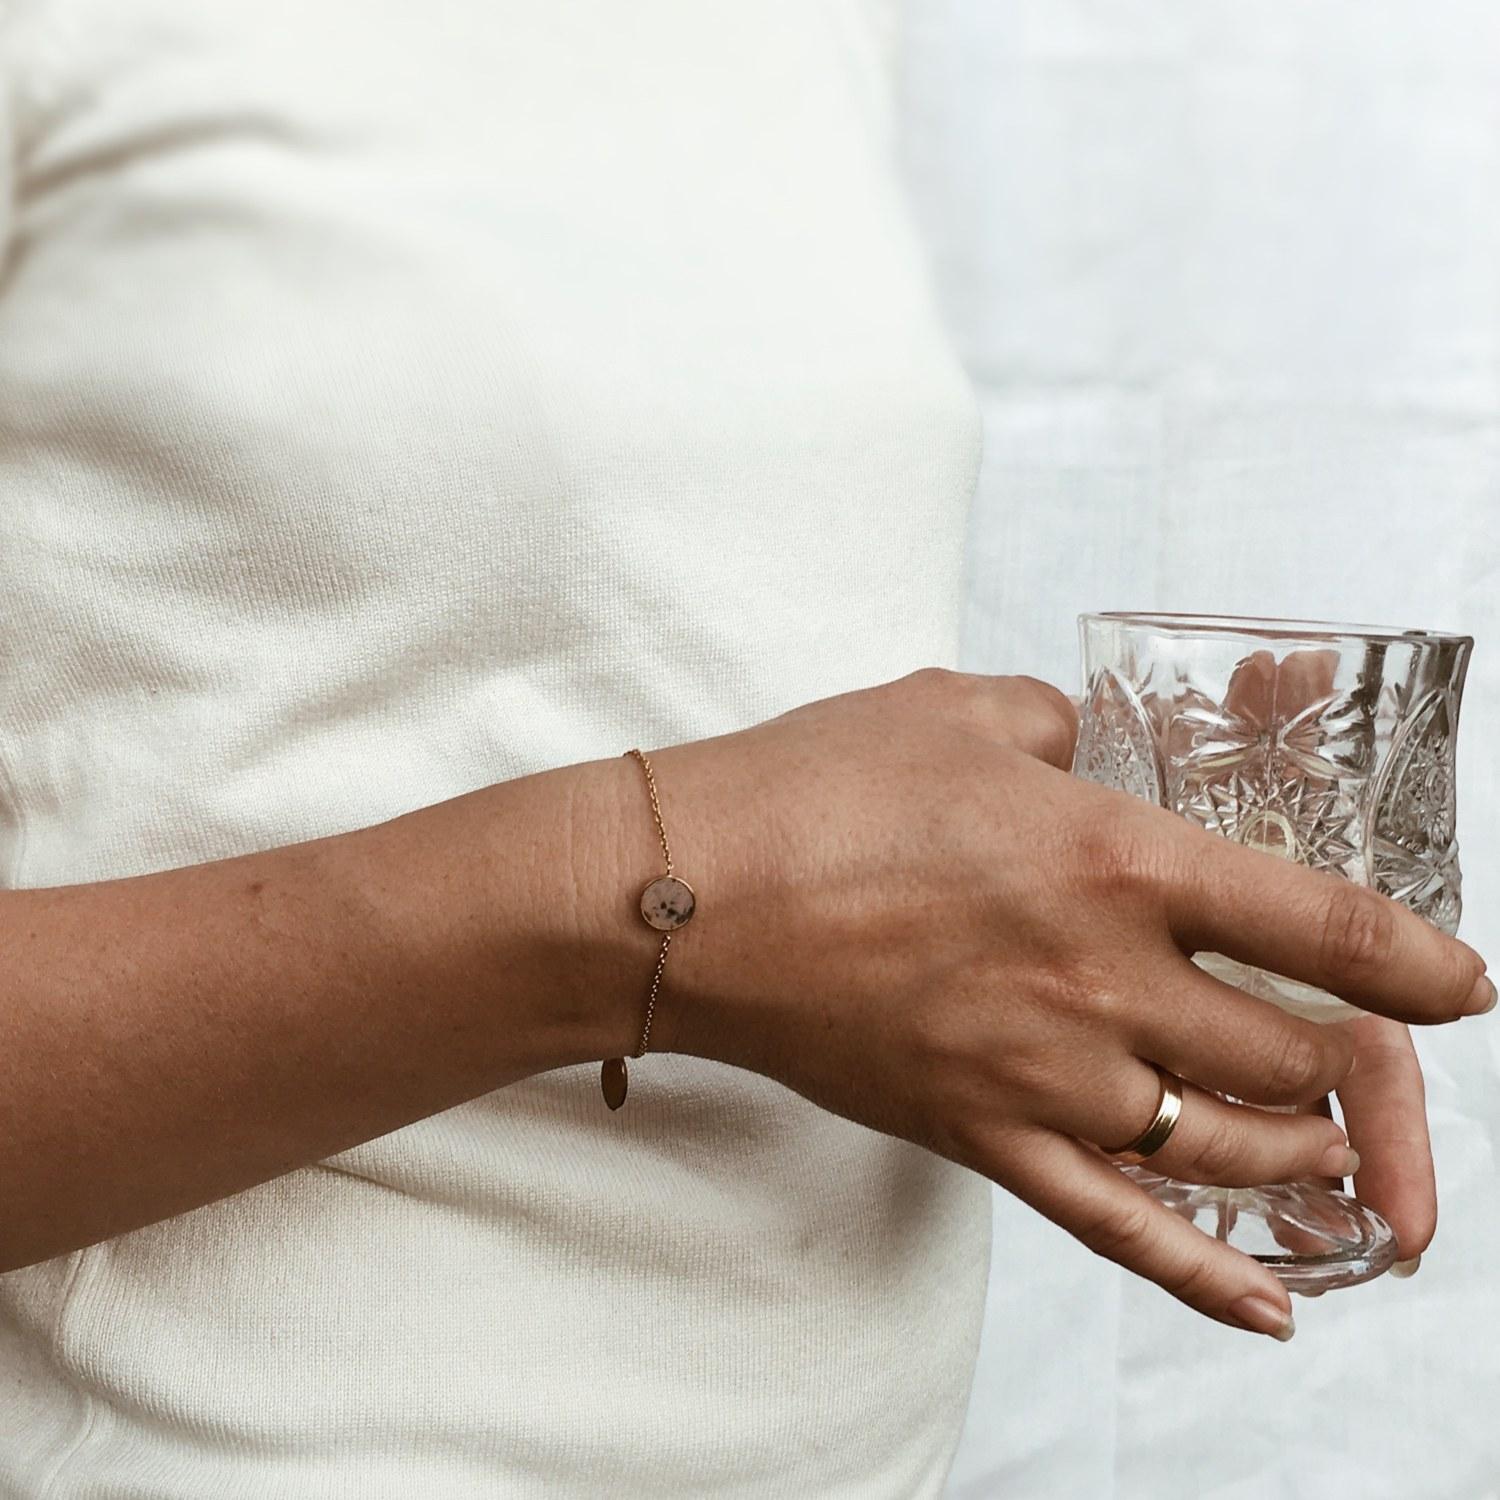 Ce bracelet avec une pierre rose grise sur une délicate chaîne en or sera un bel ornement pour votre poignet. Son design minimaliste vous permet de le porter avec pratiquement n'importe quelle tenue. Il sera parfait aussi bien pour les sorties